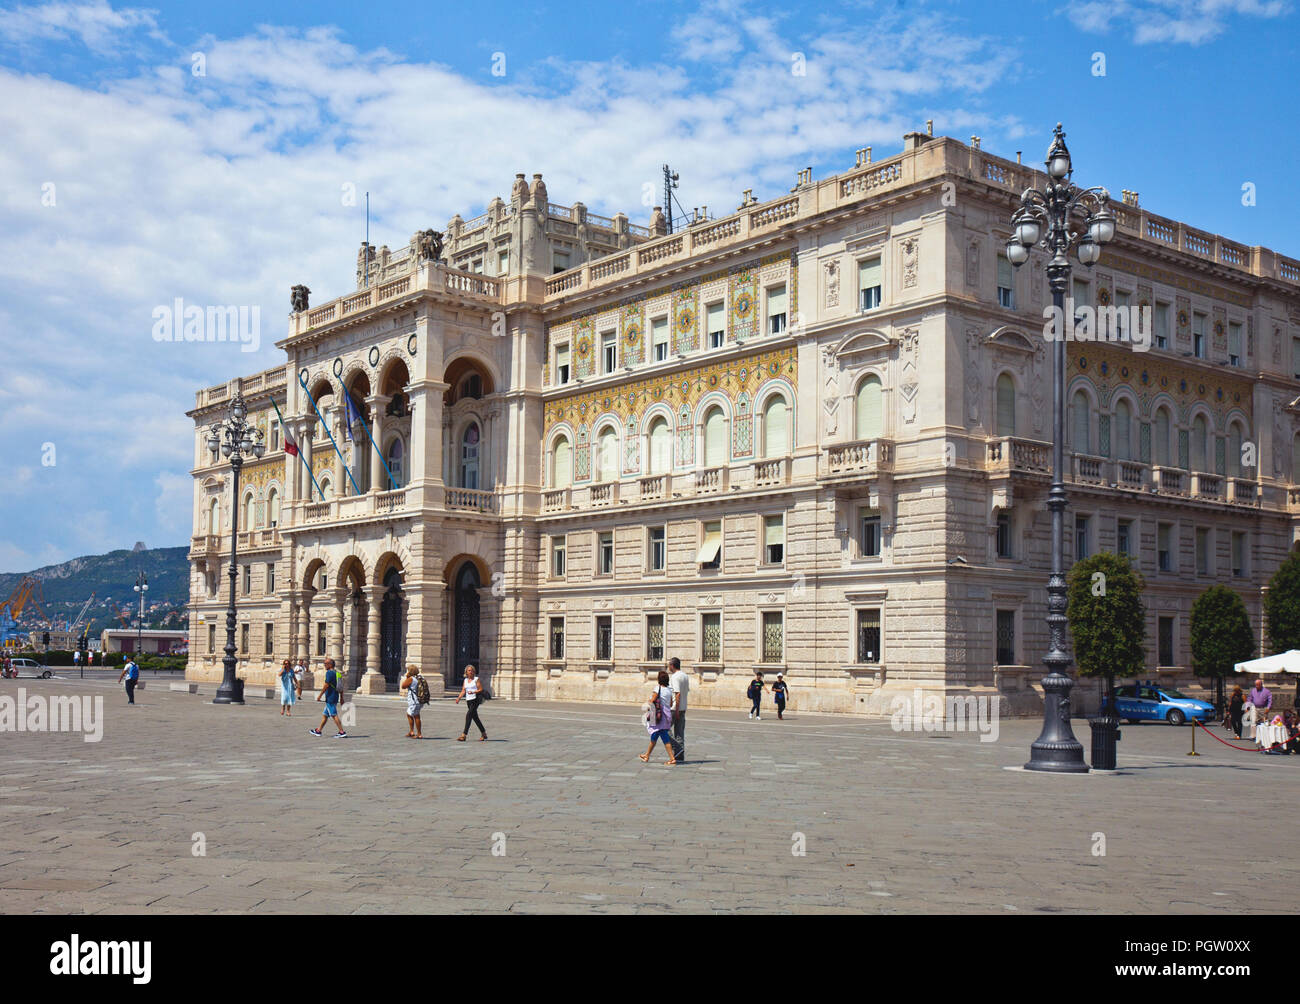 The Palazzo del Governo on the Piazza Dell 'Unita d'Italia, Trieste, Italy. Stock Photo